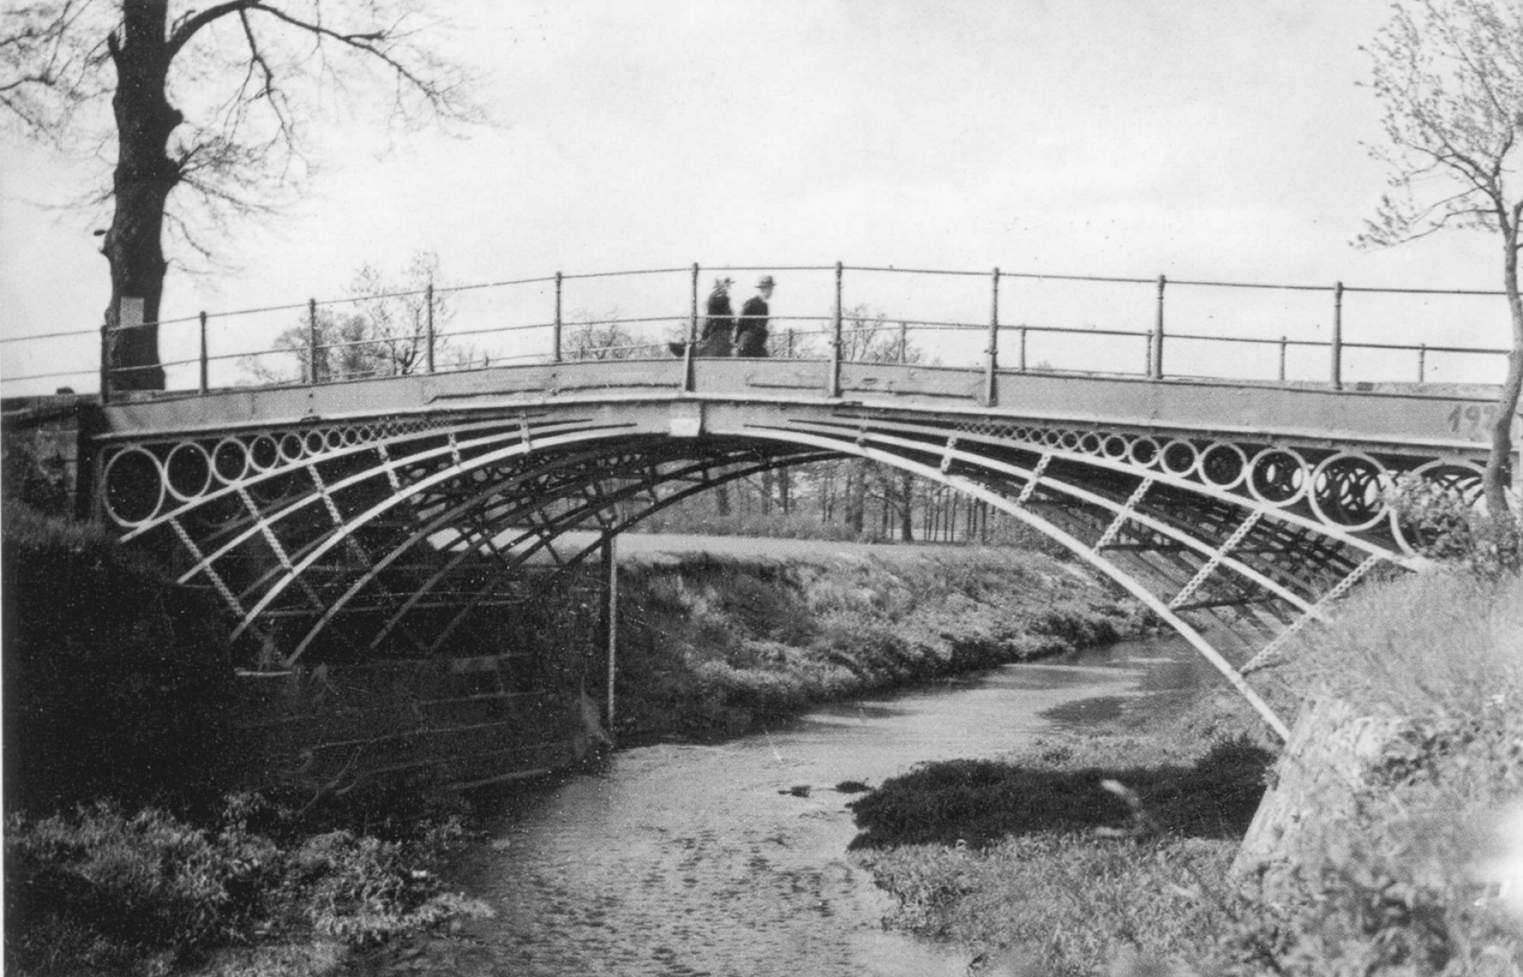 zelazny most przed1945 (1)